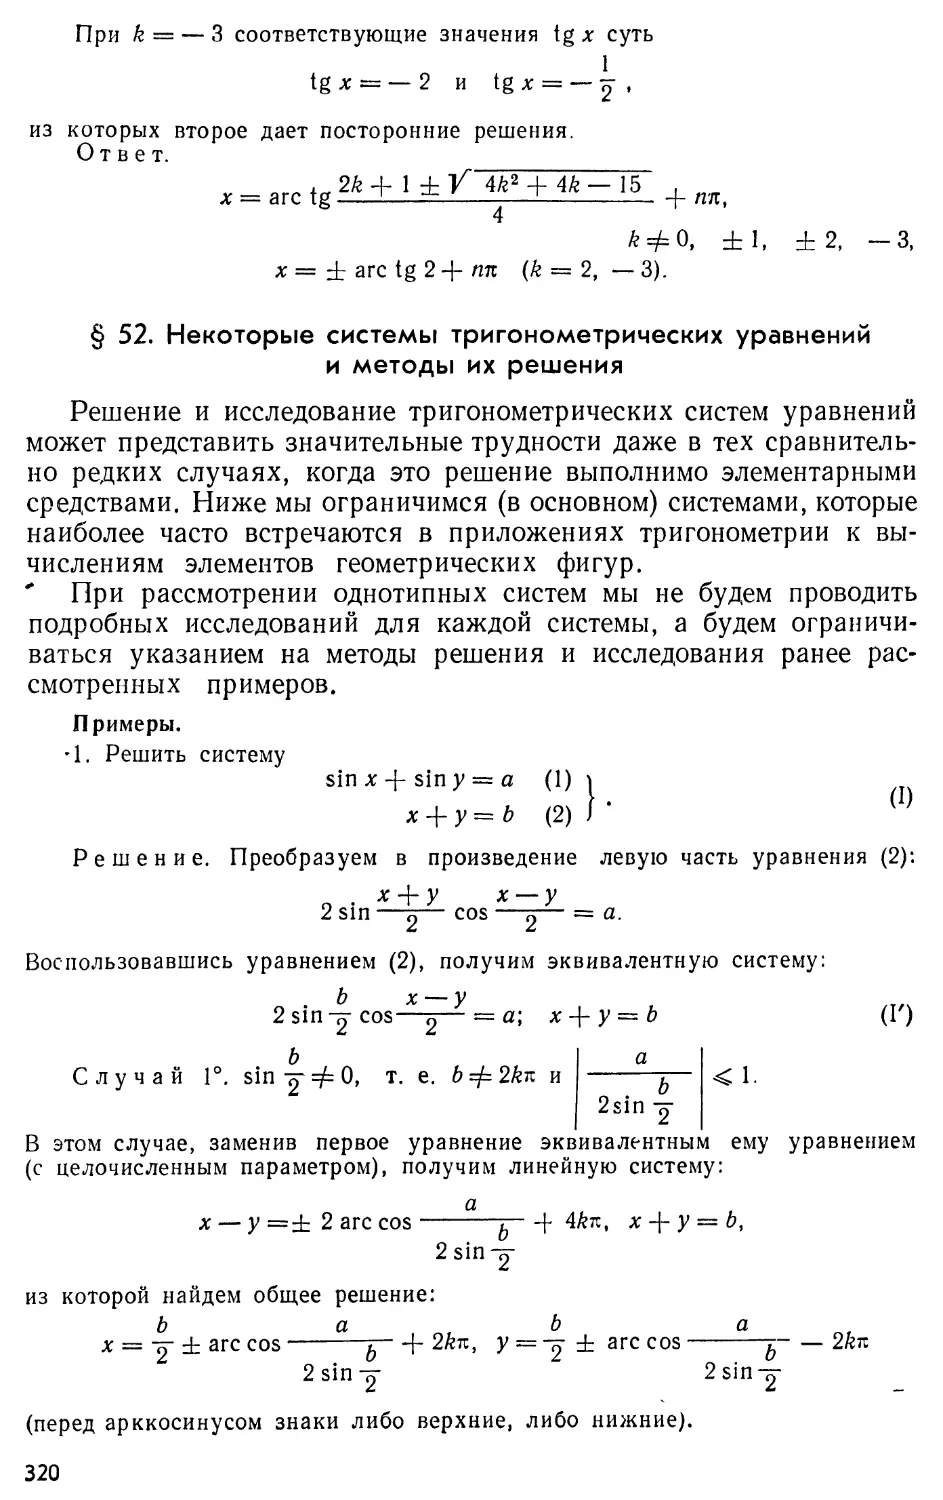 § 52. Некоторые системы тригонометрических уравнений и методы их решения